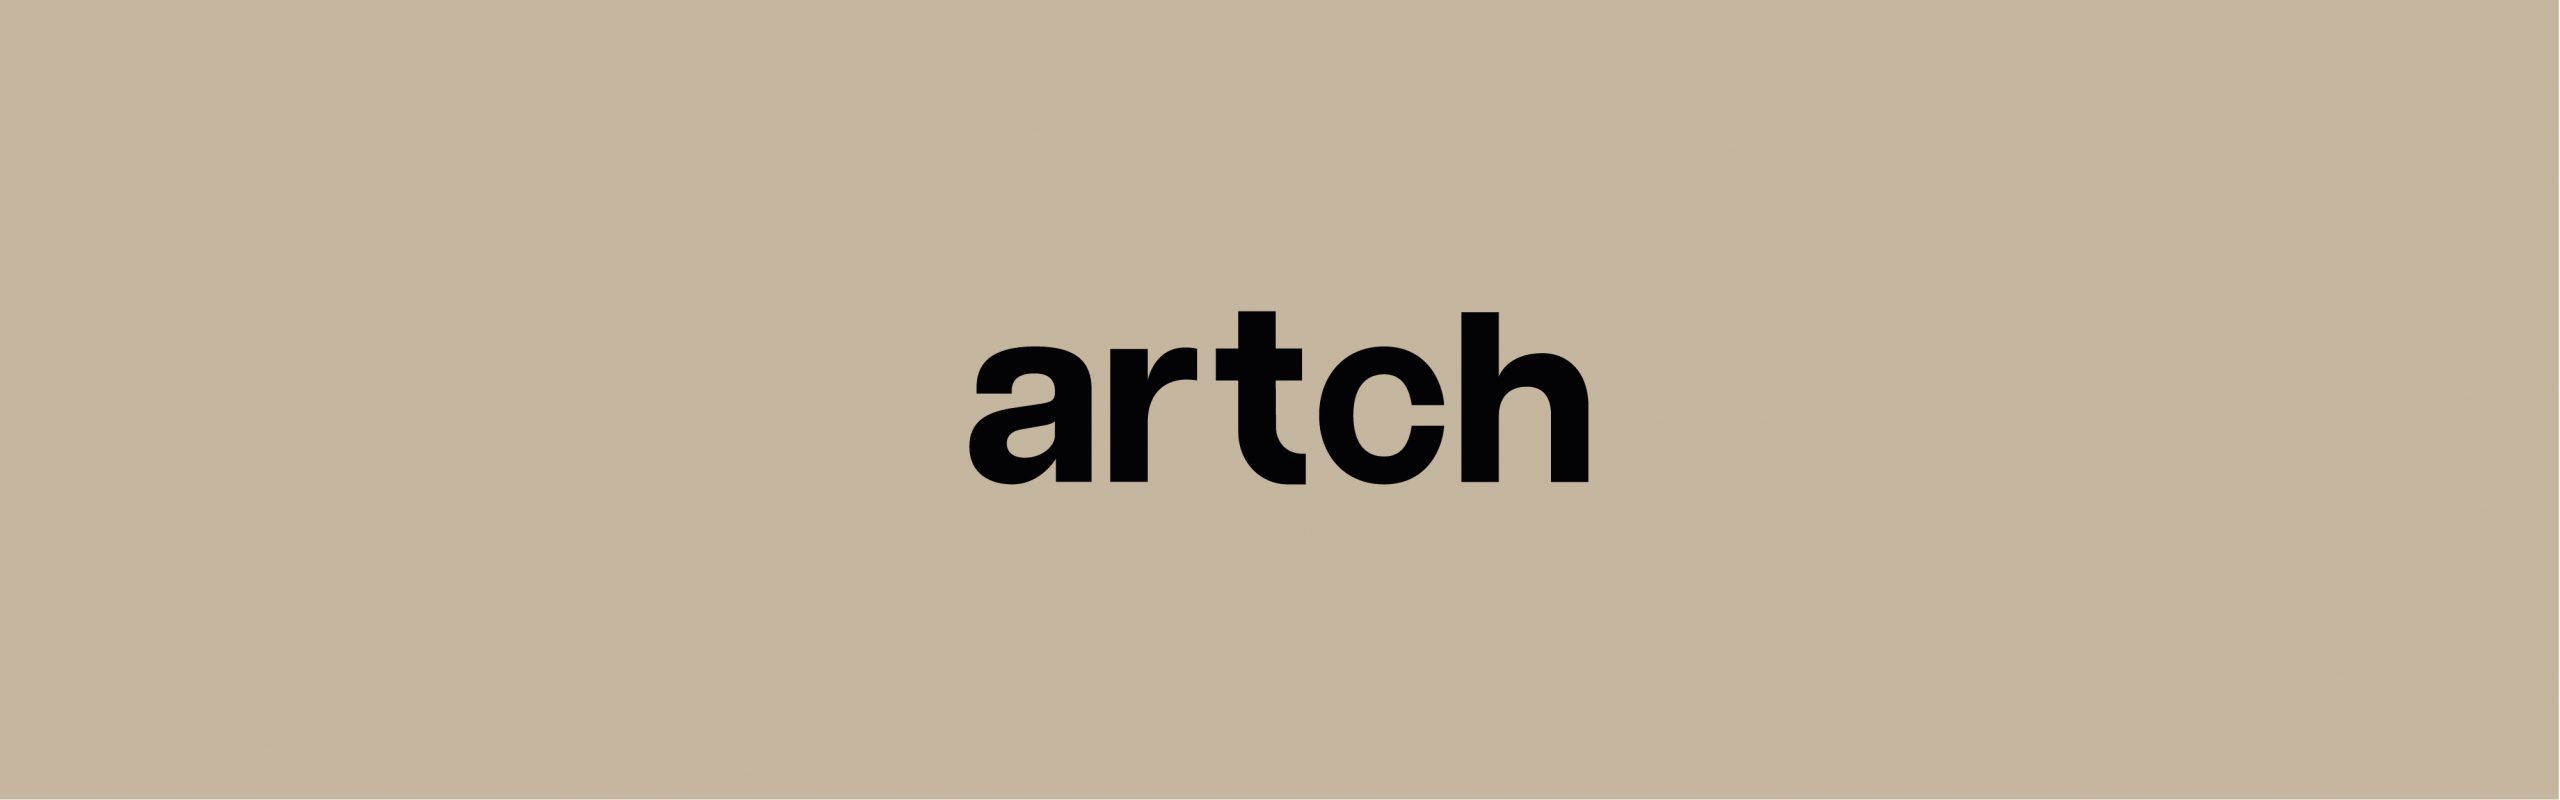 ARTCH_PORTFOLIO_MONTAGE-09